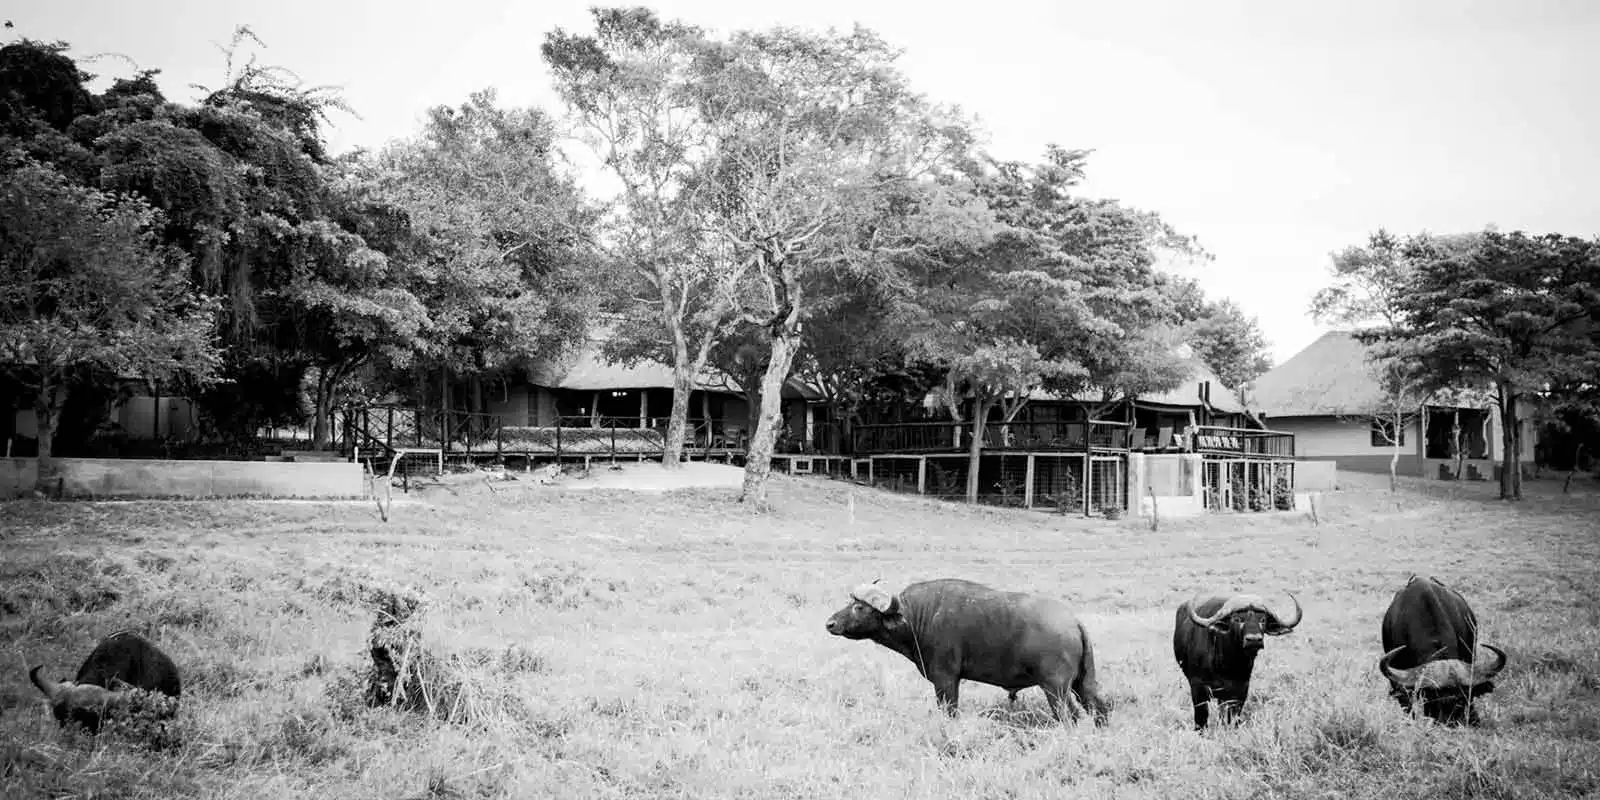 21 Umkumbe Safari Lodge